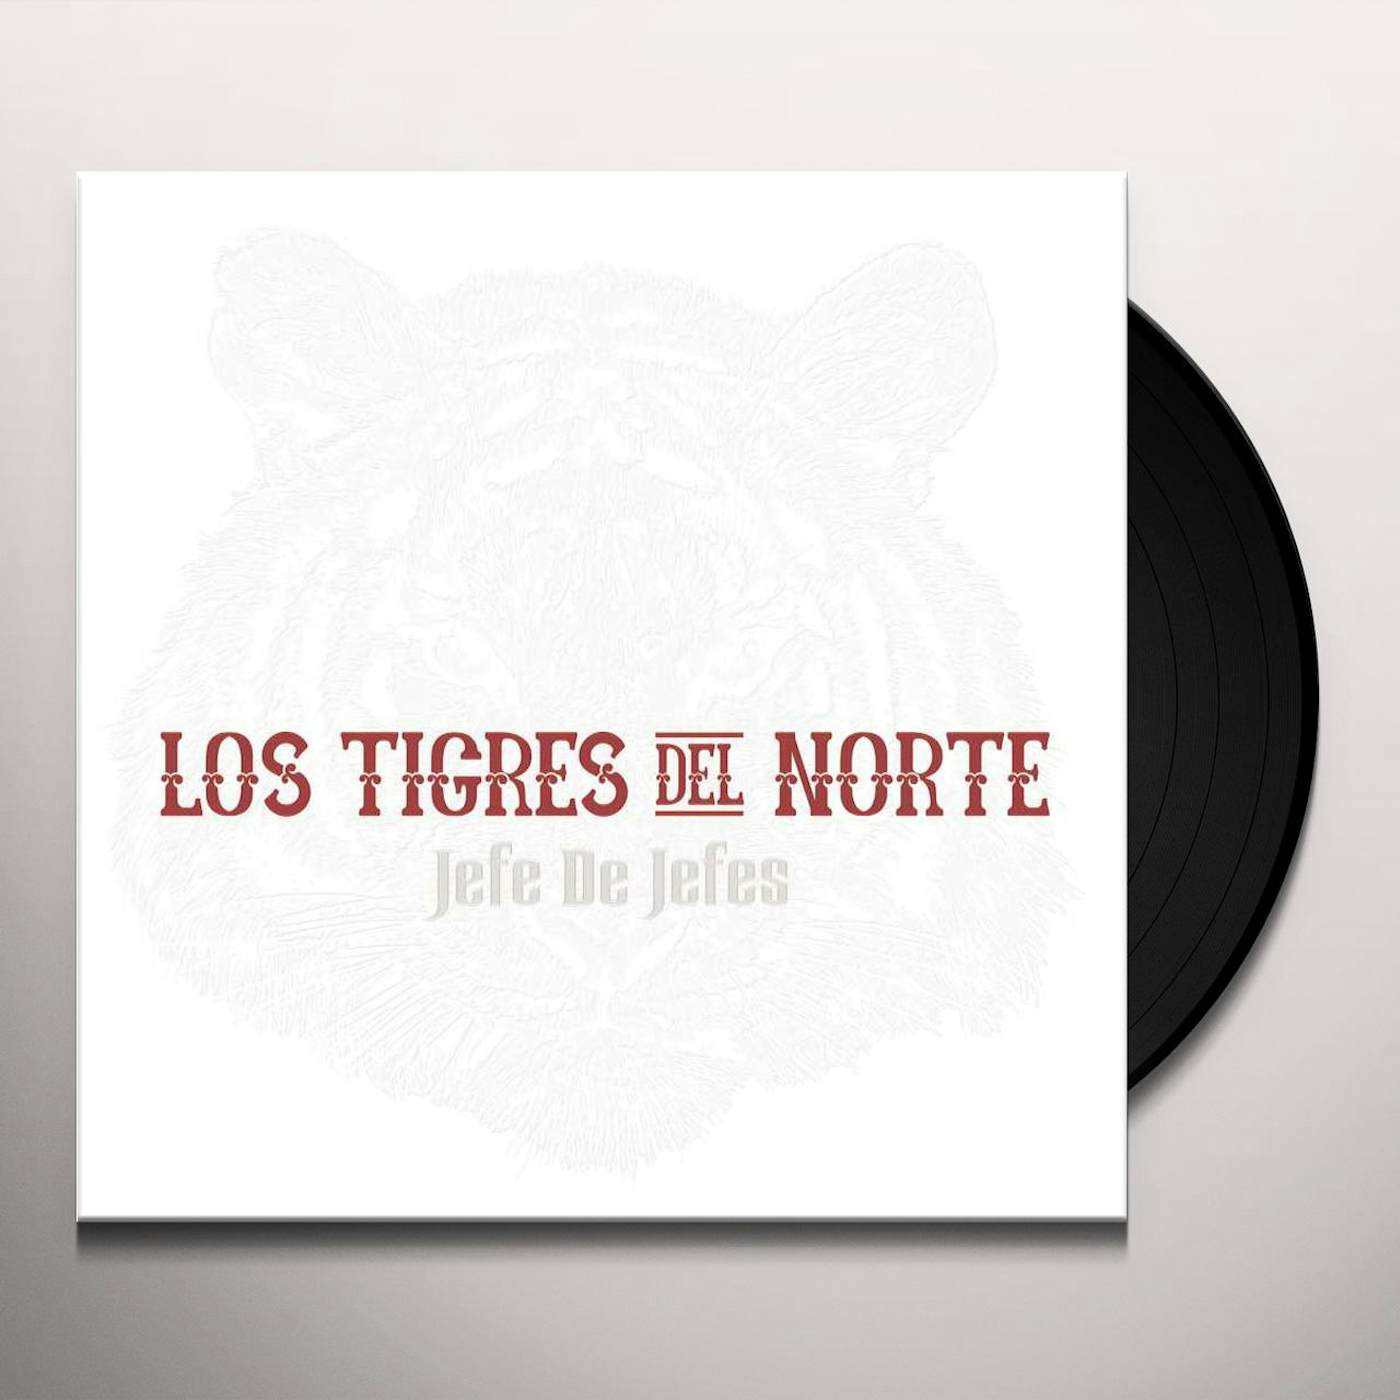 Los Tigres Del Norte Jefe De Jefes Vinyl Record